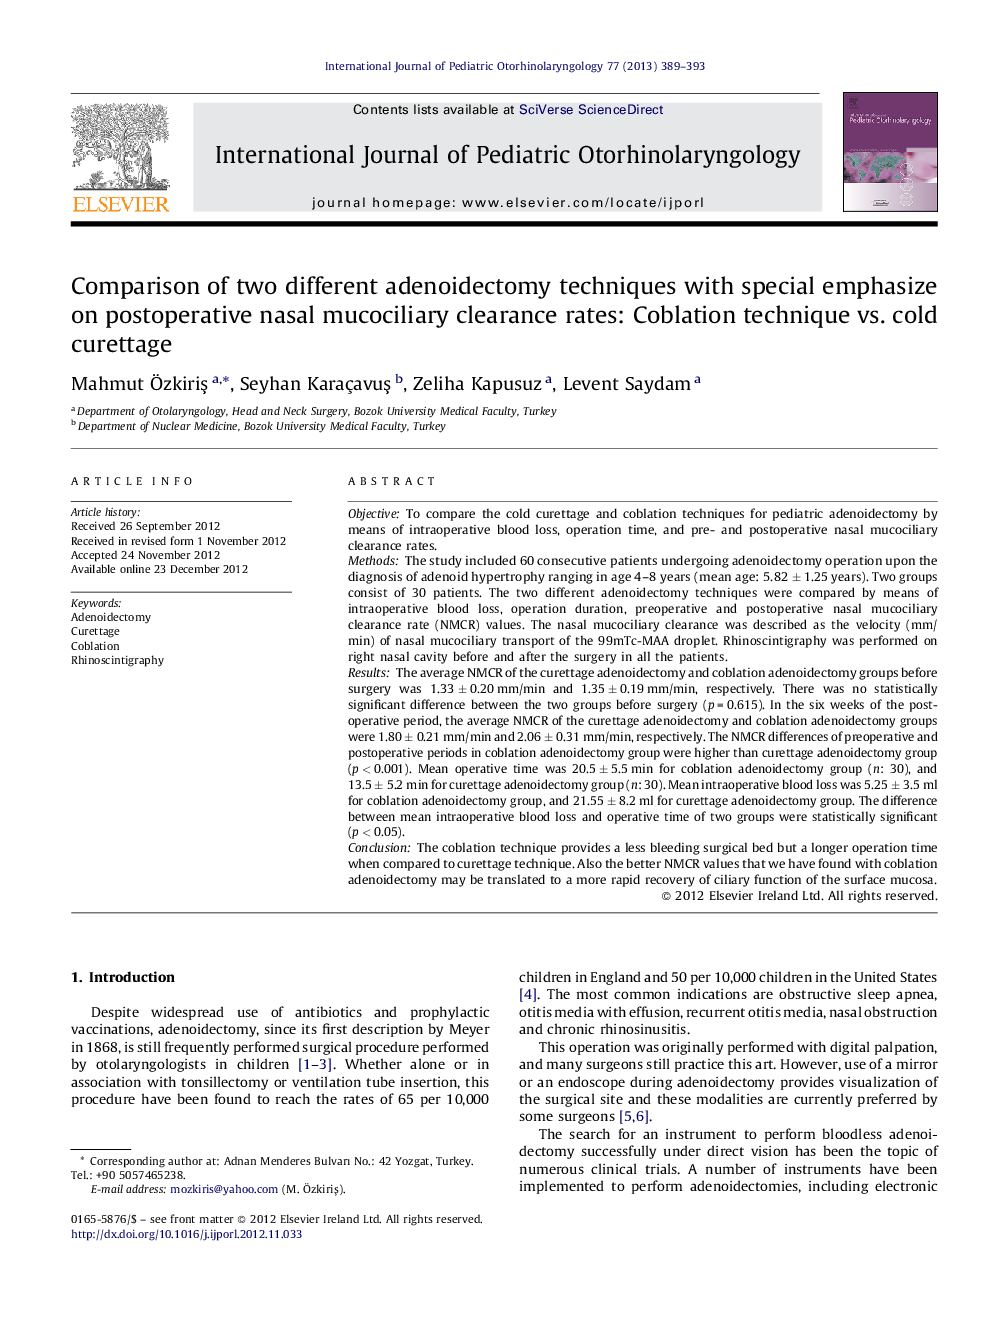 مقایسه دو روش مختلف آدنویودکتومی با تاکید خاص بر میزان ترمیم موکوسیلیس بینی پس از عمل: روش کابلاسی در برابر کورتاژ سرد 